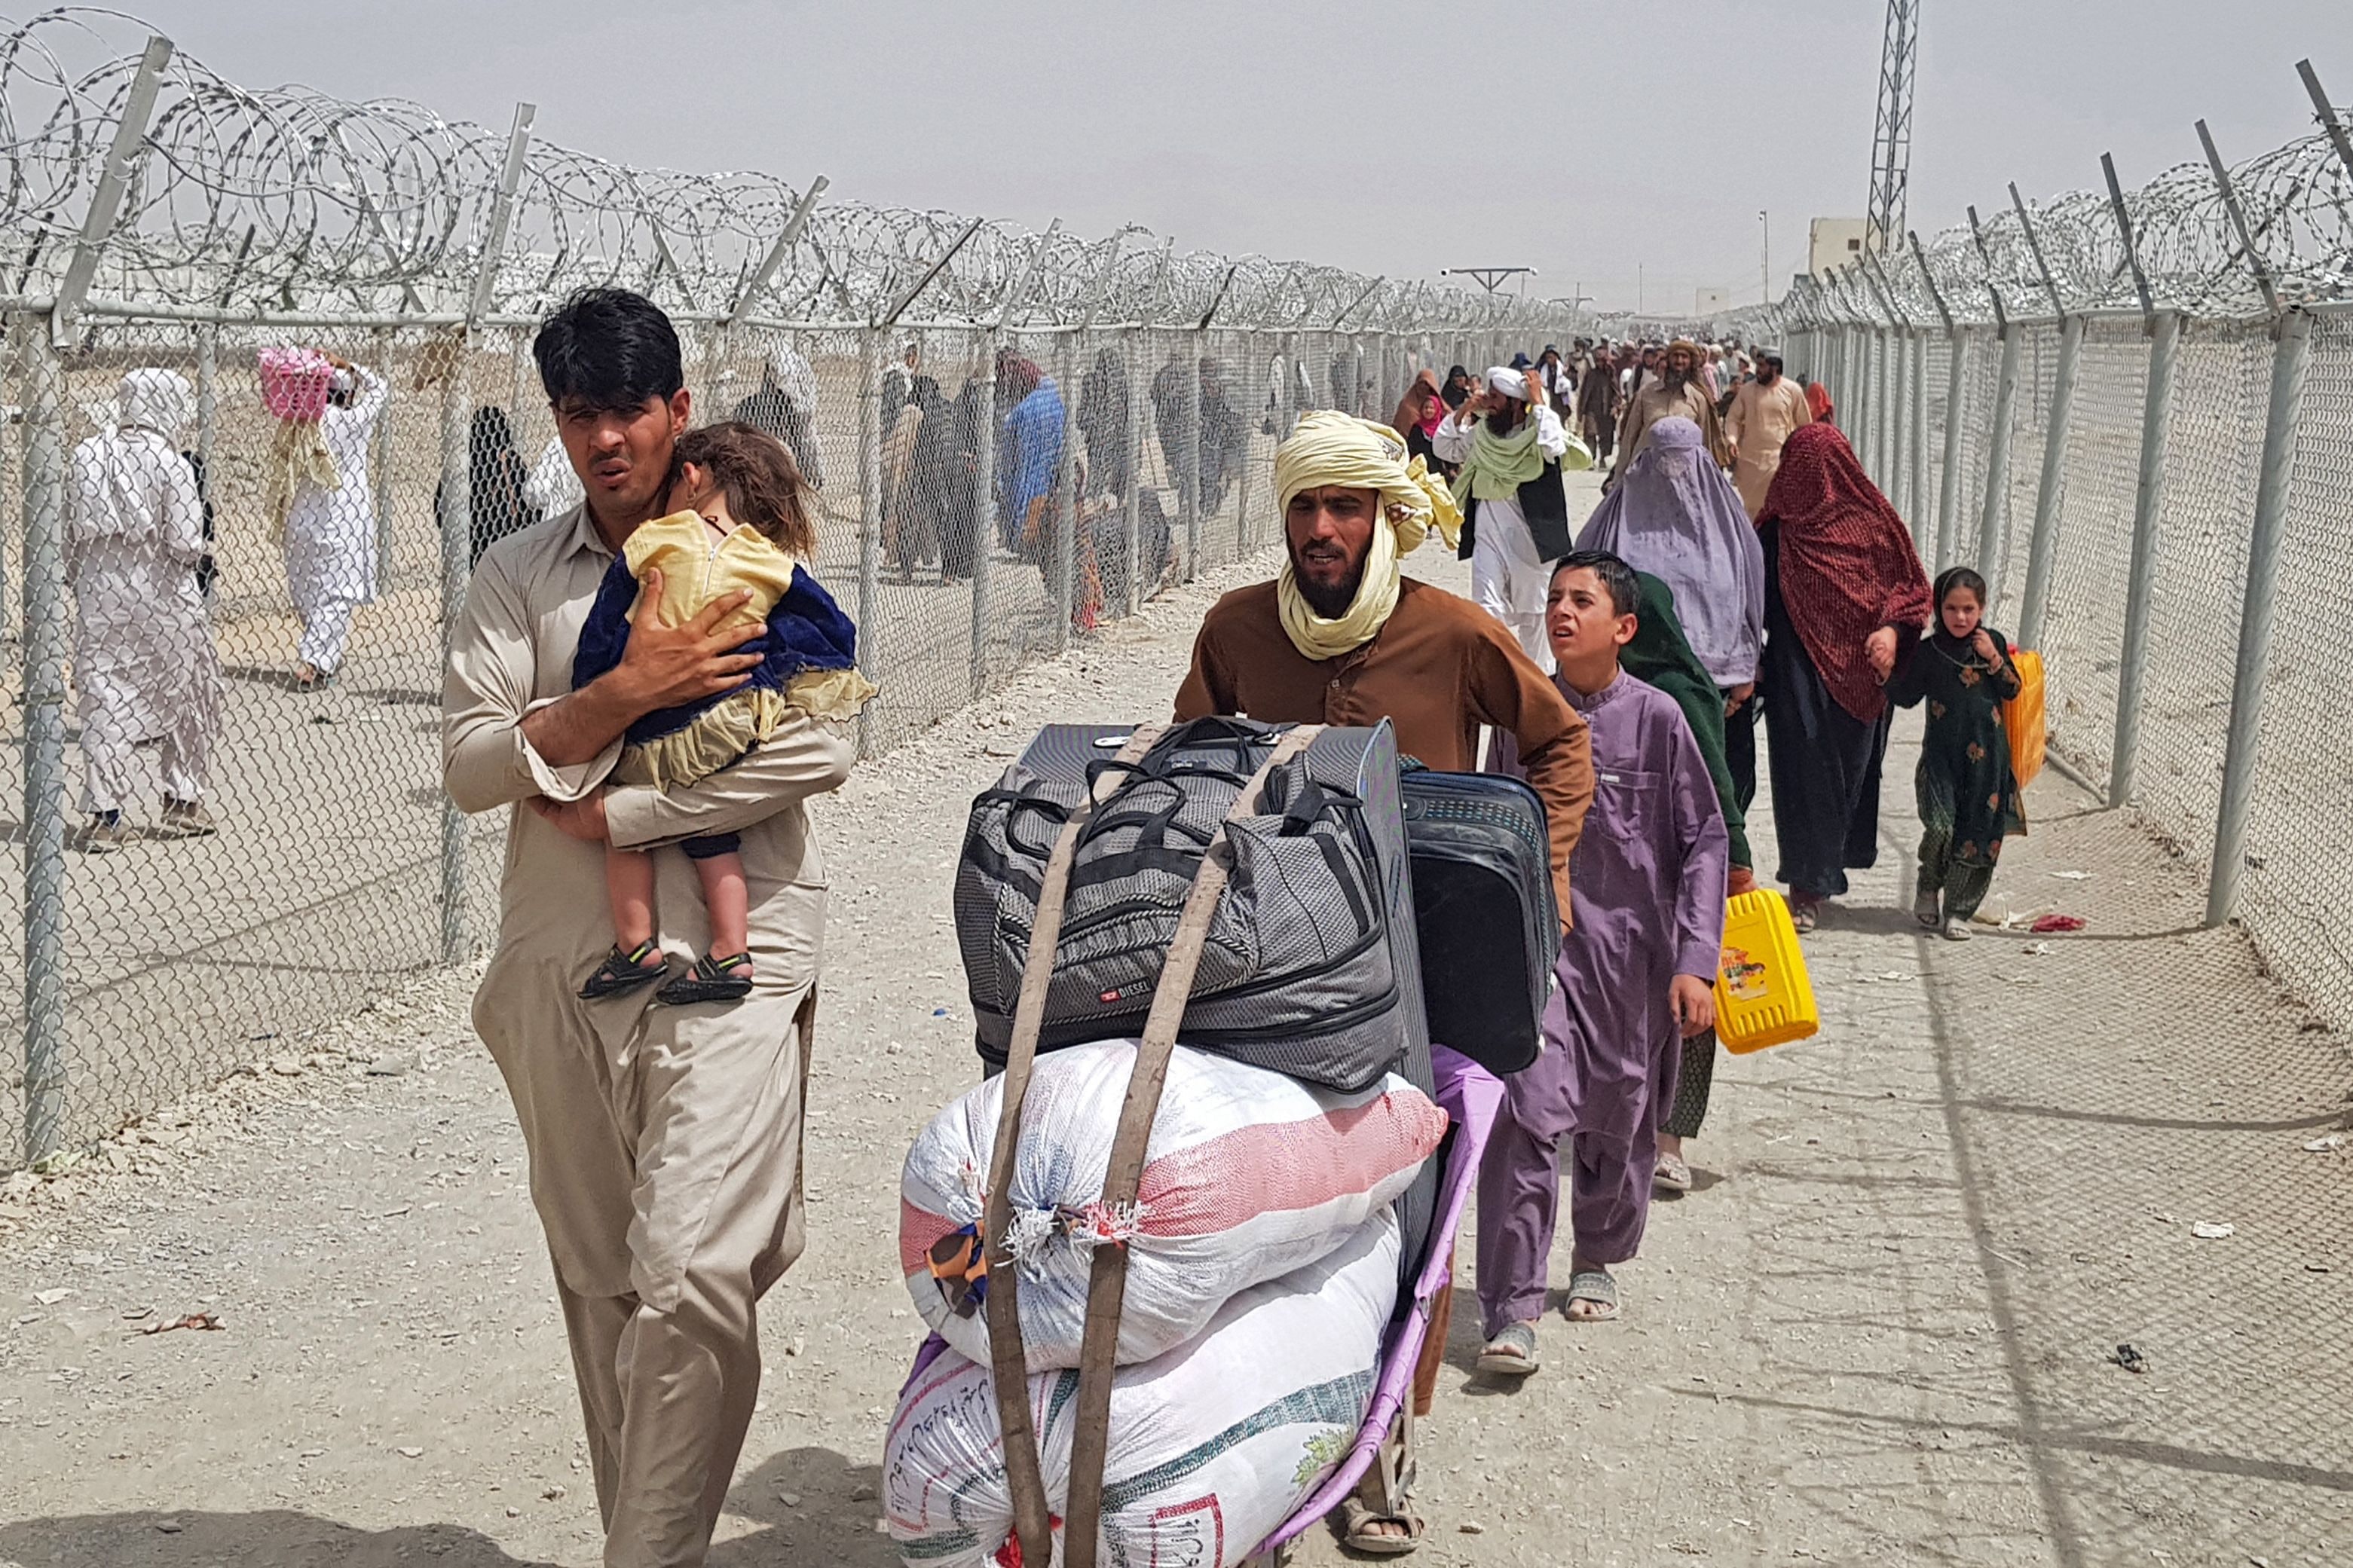 Comment aider les efforts de soutien aux personnes touchées par la crise en Afghanistan